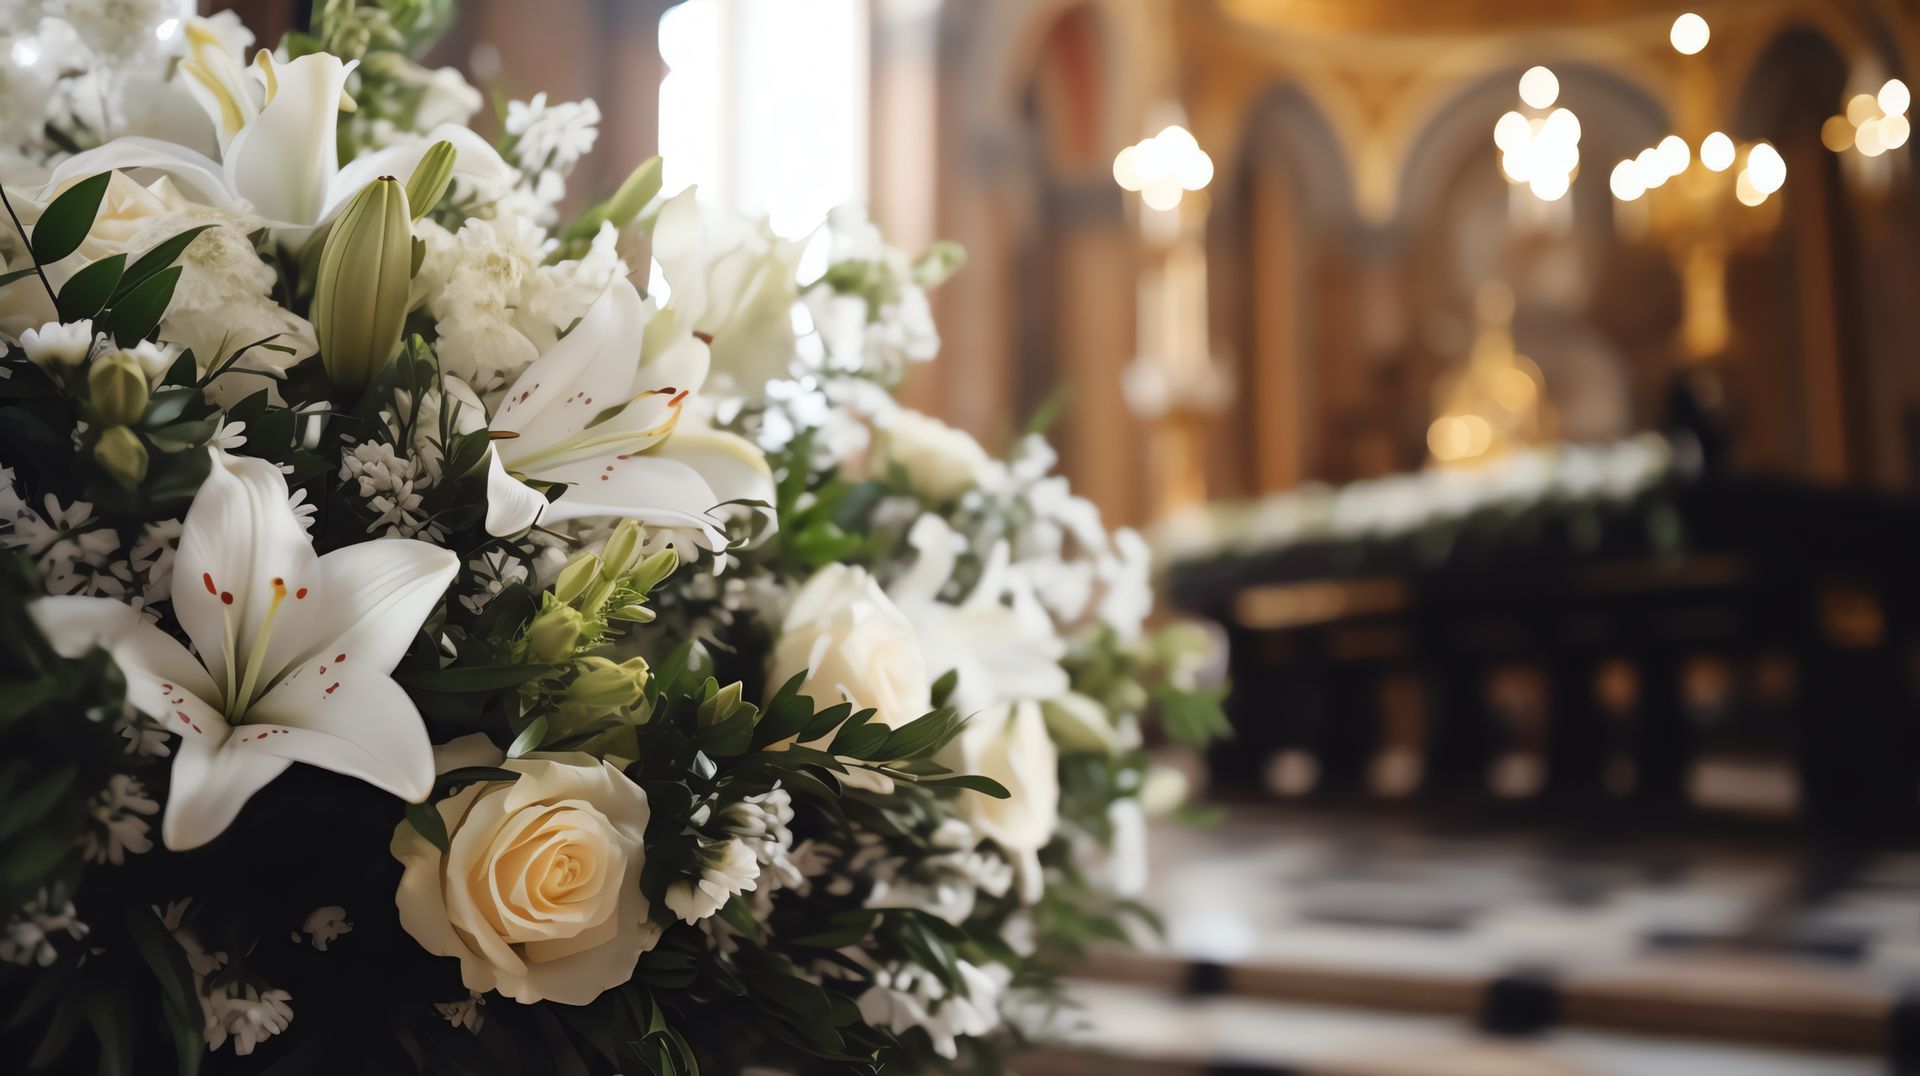 Bouquet de fleurs blanches lors d'une cérémonie funéraire